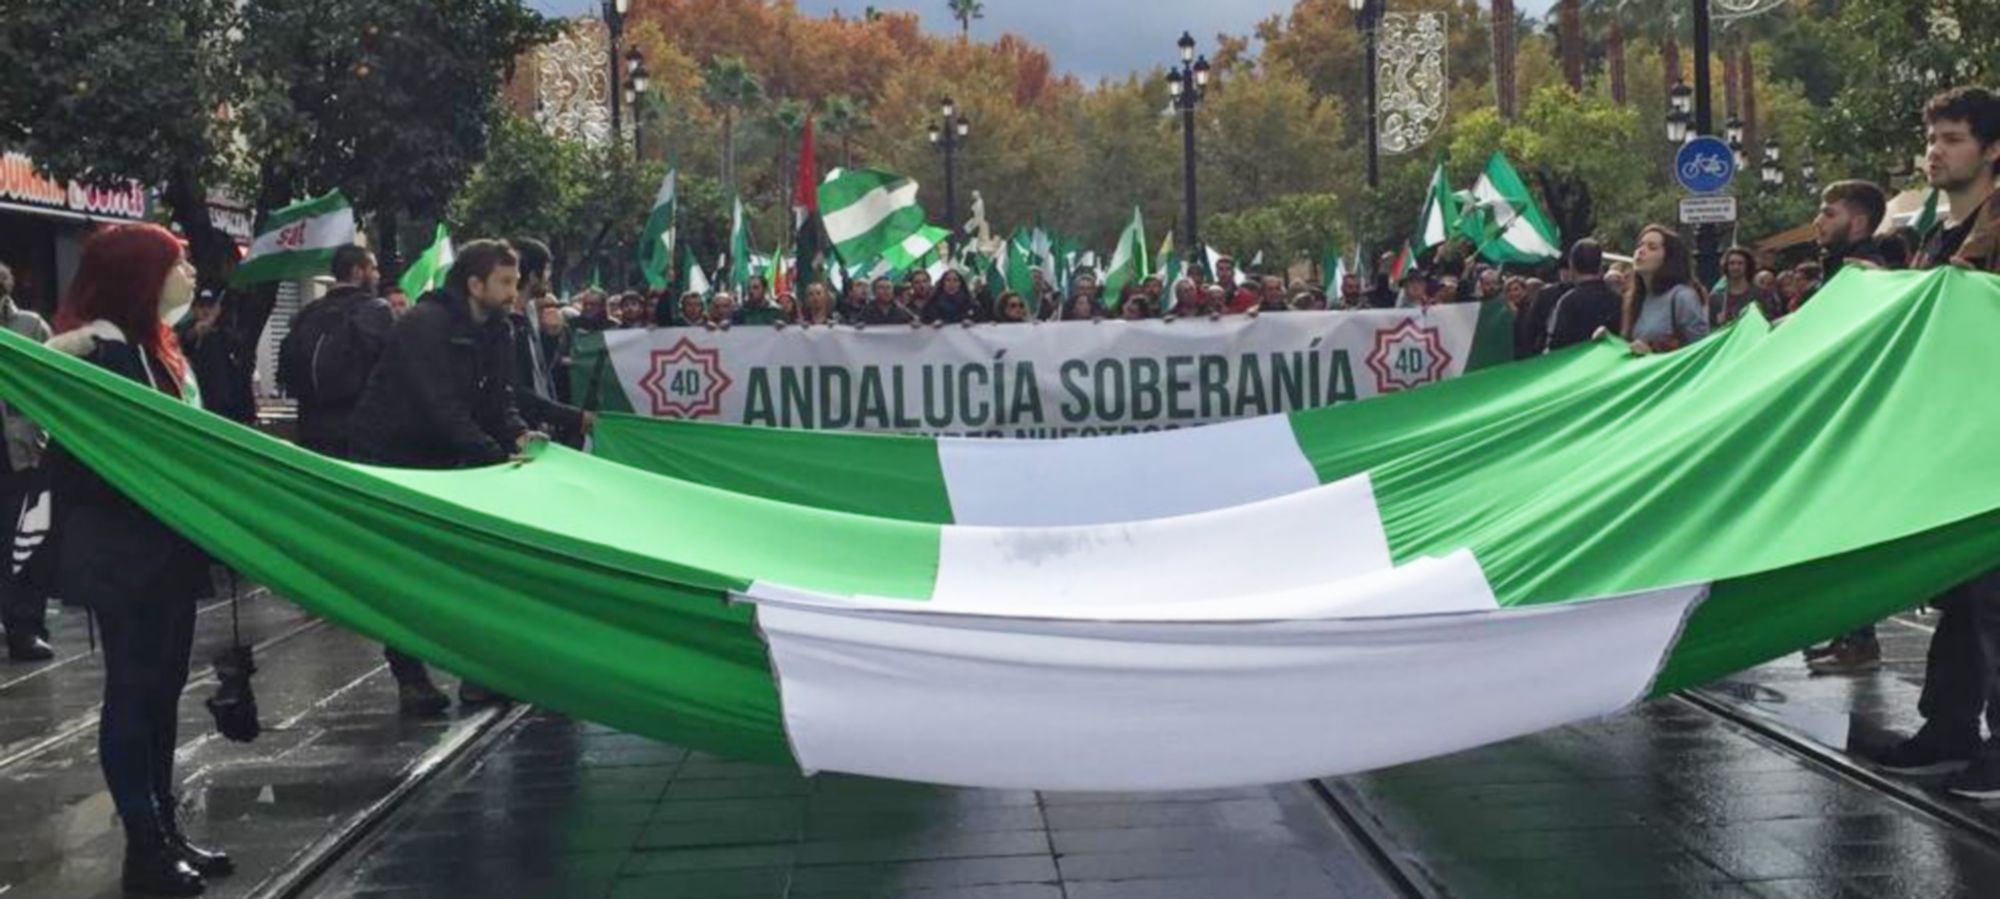 Manifestación por una Andalucía soberana.